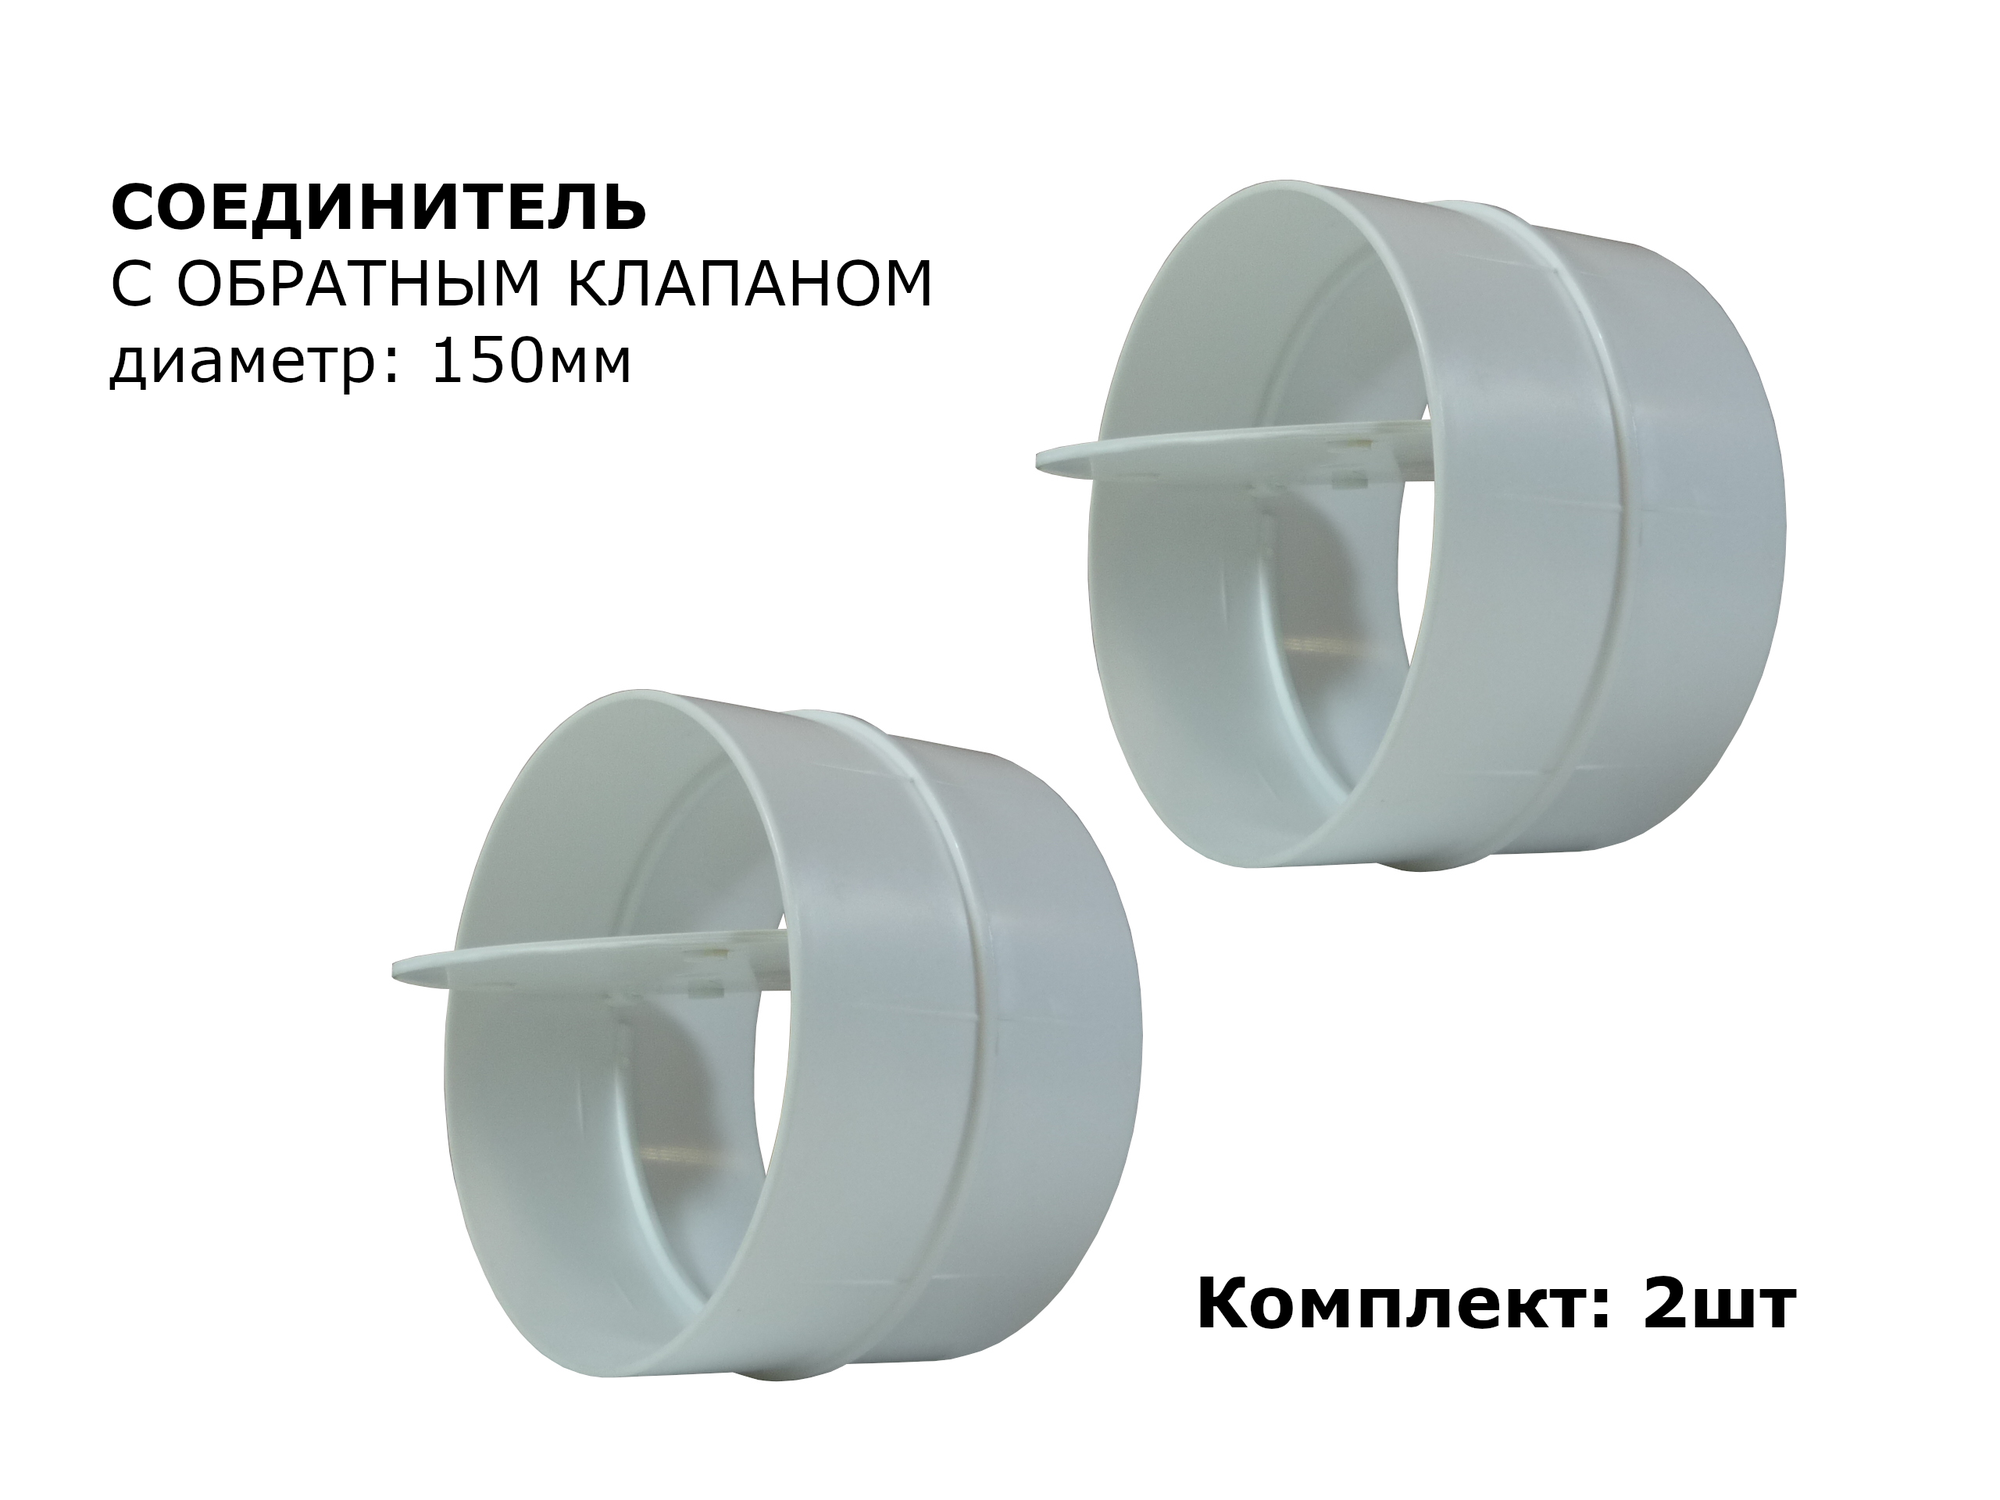 Соединитель круглых воздуховодов с обратным клапаном d150мм 2шт белый